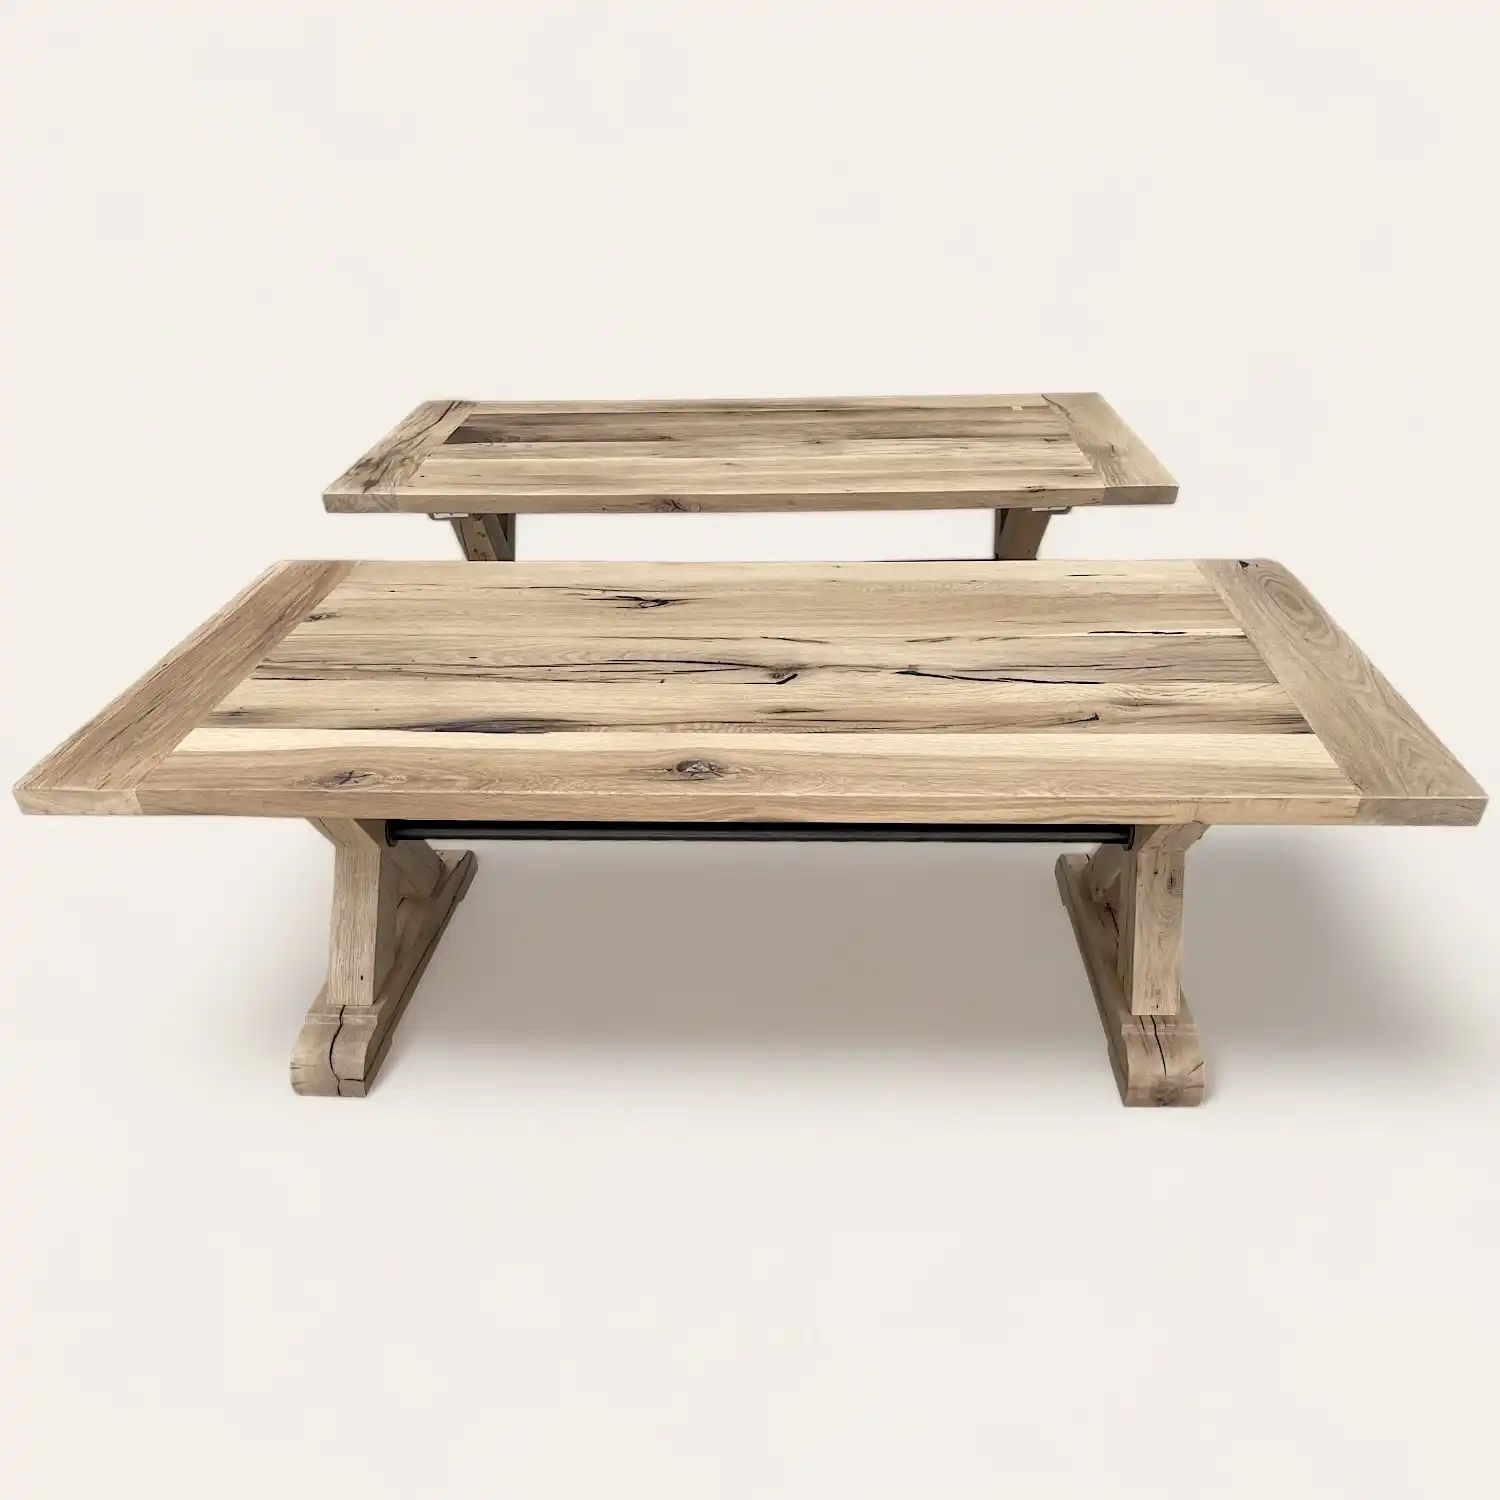  Deux tables en bois rustique sur fond blanc. 